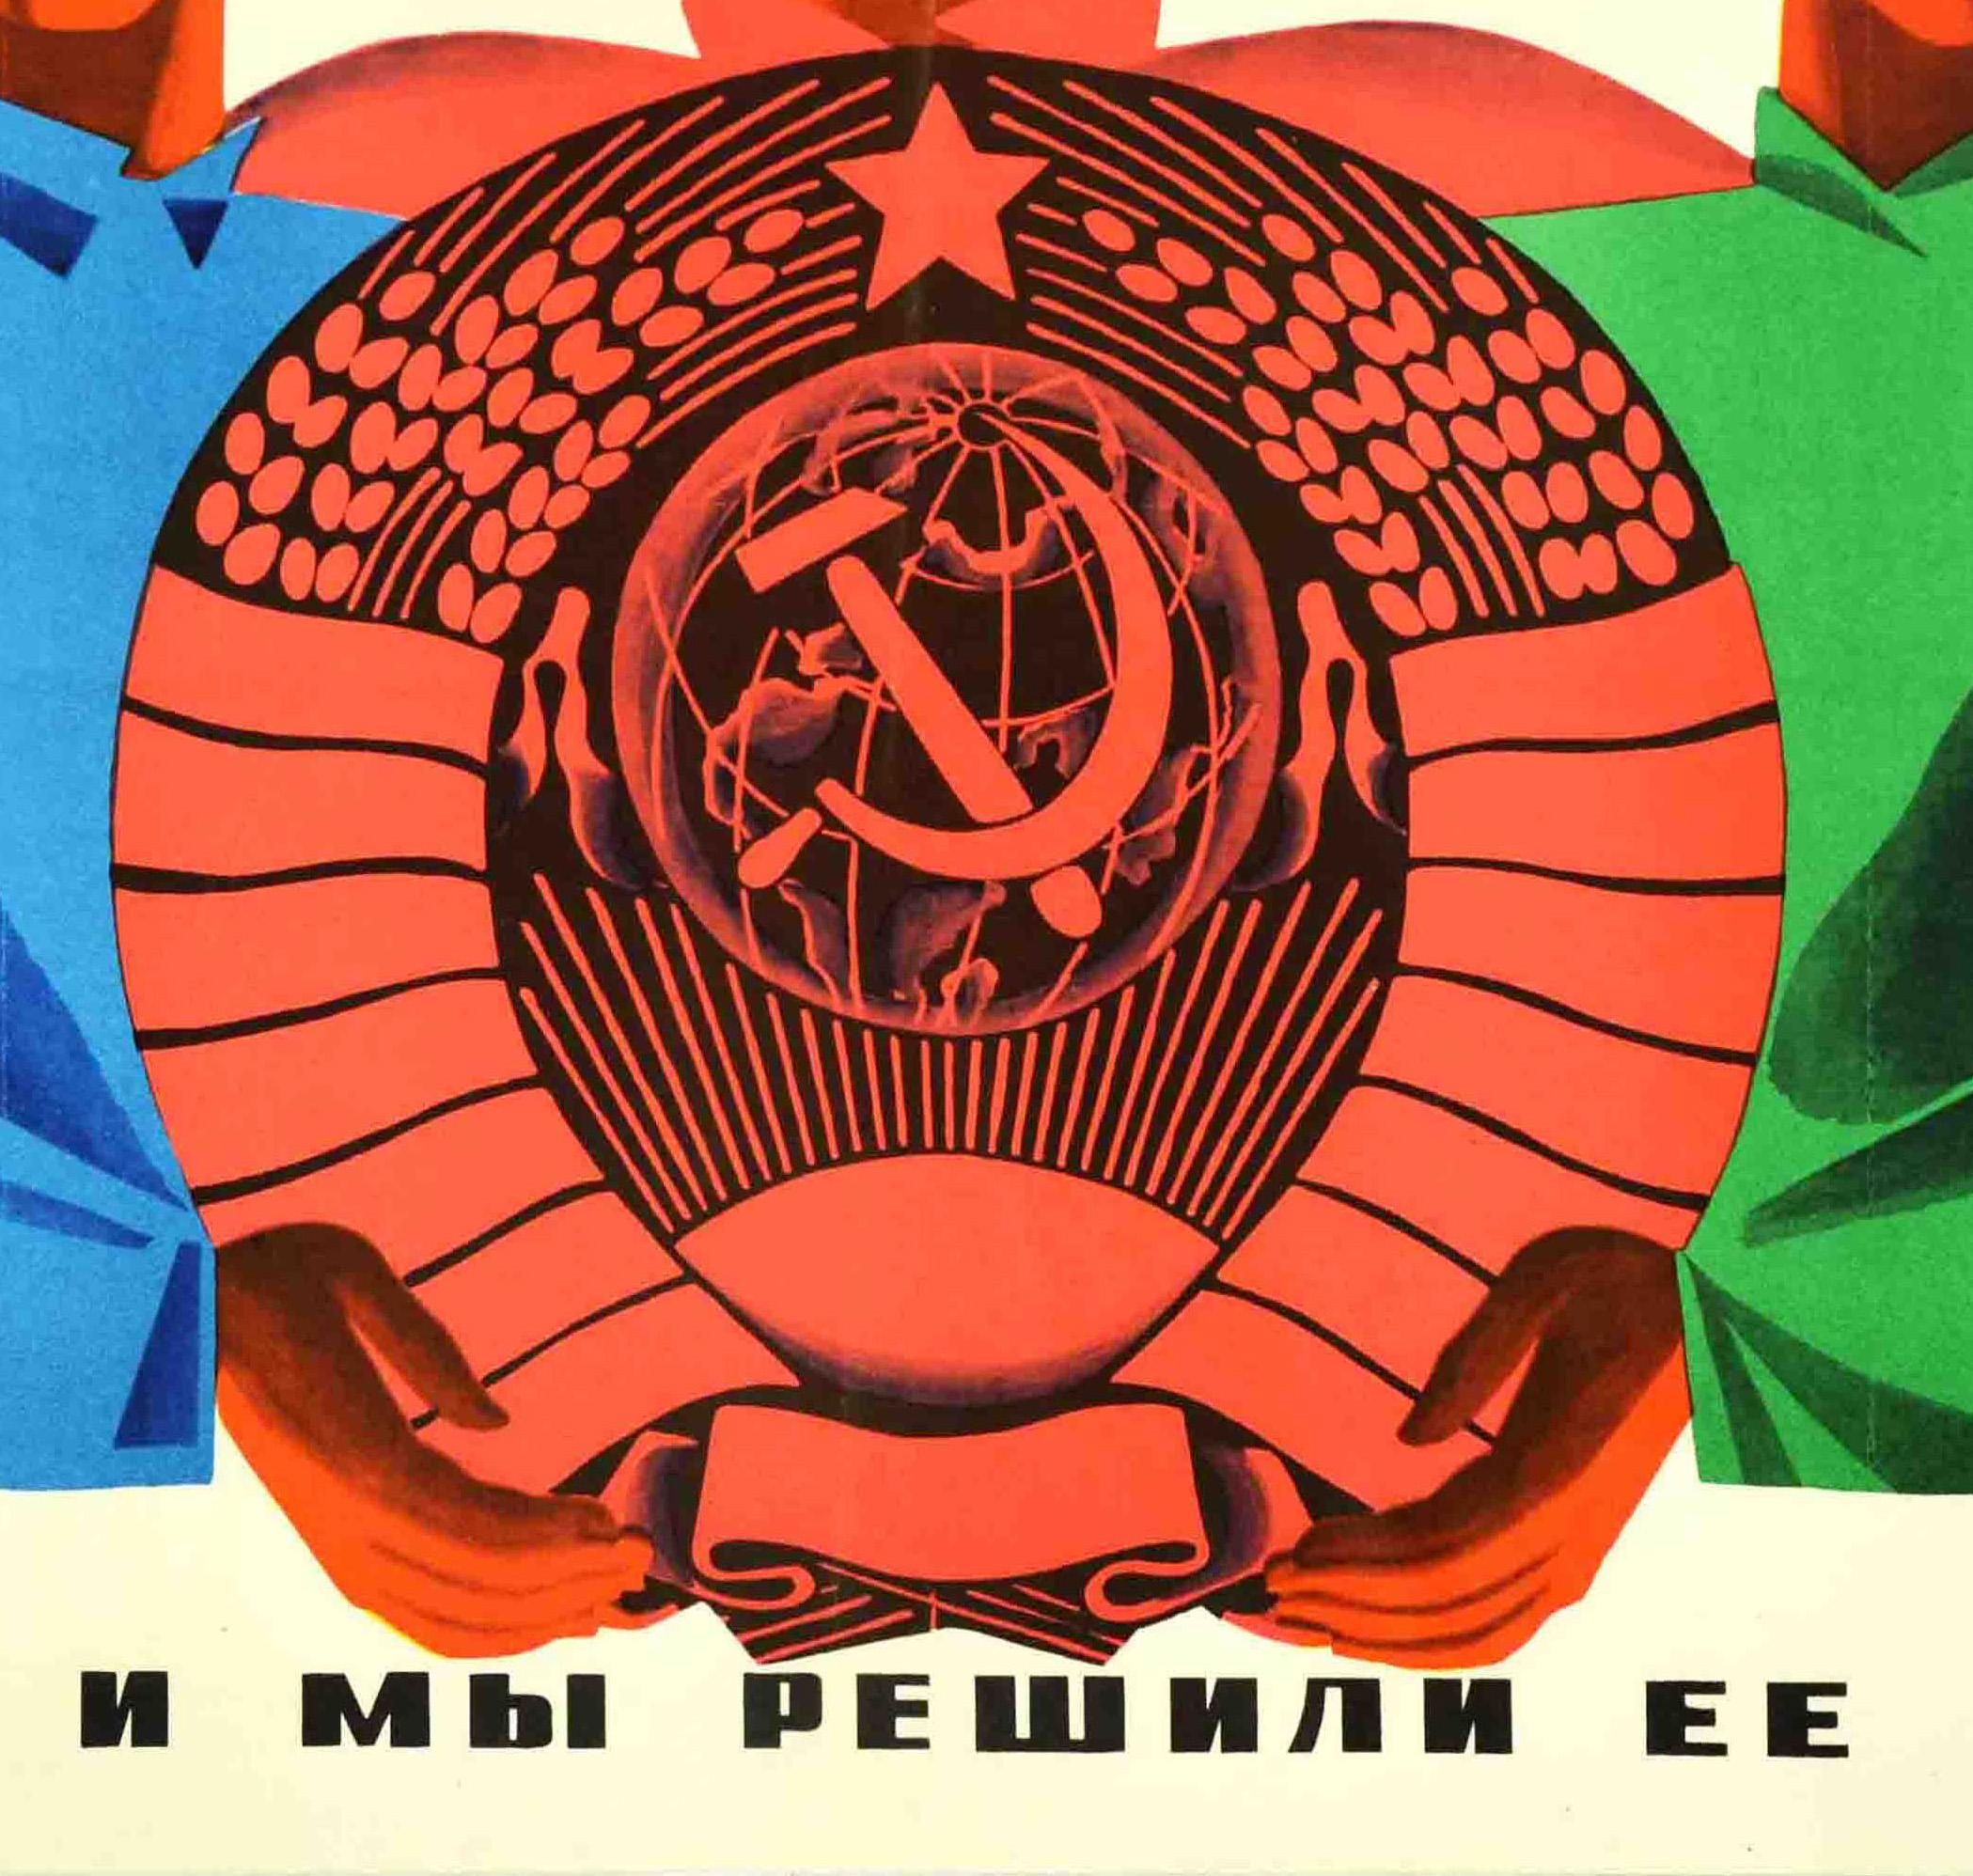 Affiche de propagande soviétique d'époque - Nous nous sommes donné pour tâche de mettre fin aux conflits ethniques et à l'oppression et nous y sommes parvenus - représentant trois hommes de nationalités différentes, l'homme central entourant de ses